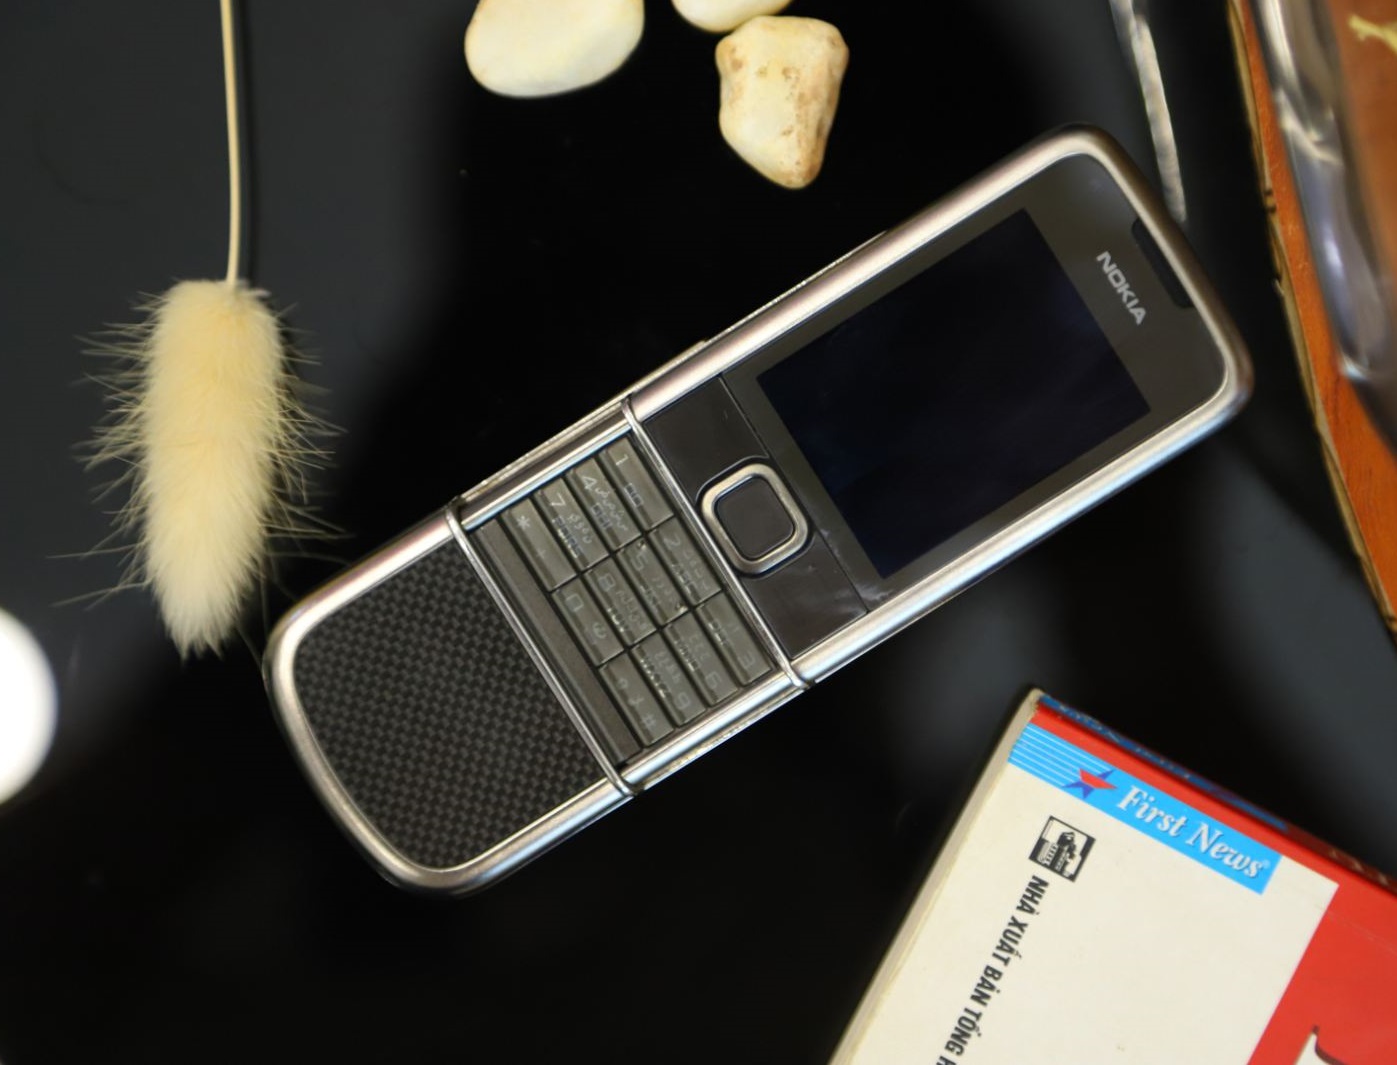 Nokia 8800E Carbon Arte 4G Zin Hùng Luxury: Được sản xuất với chất liệu tuyệt vời và thiết kế sang trọng, Nokia 8800E Carbon Arte 4G Zin Hùng Luxury đang là sản phẩm được săn đón nhất trên thị trường hiện nay. Với khả năng kết nối 4G cùng các tính năng thông minh như camera chất lượng cao, kính cường lực và đèn flash, chiếc điện thoại này sẽ là người bạn đồng hành đắc lực cho mọi nhu cầu của bạn.